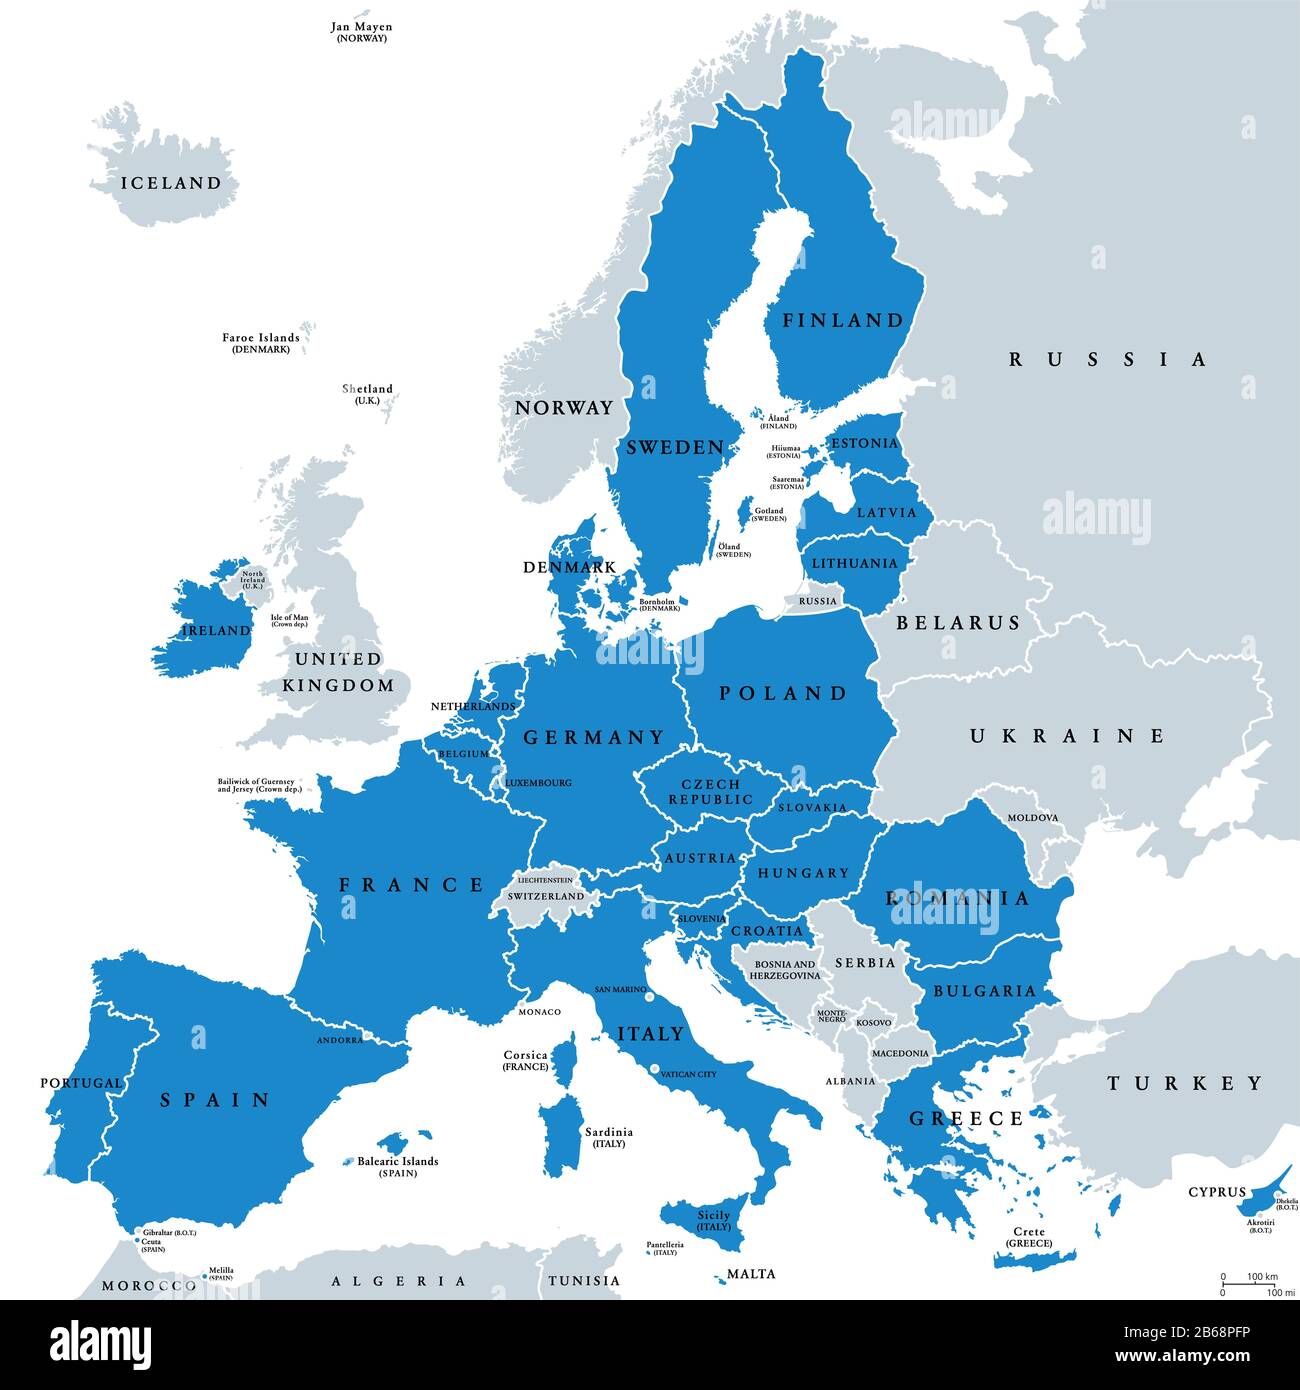 Mapa político de los estados miembros de la Unión Europea. 27 estados miembros de la UE, después de la salida del Reino Unido. No se incluyen los territorios especiales de los Estados miembros. Foto de stock